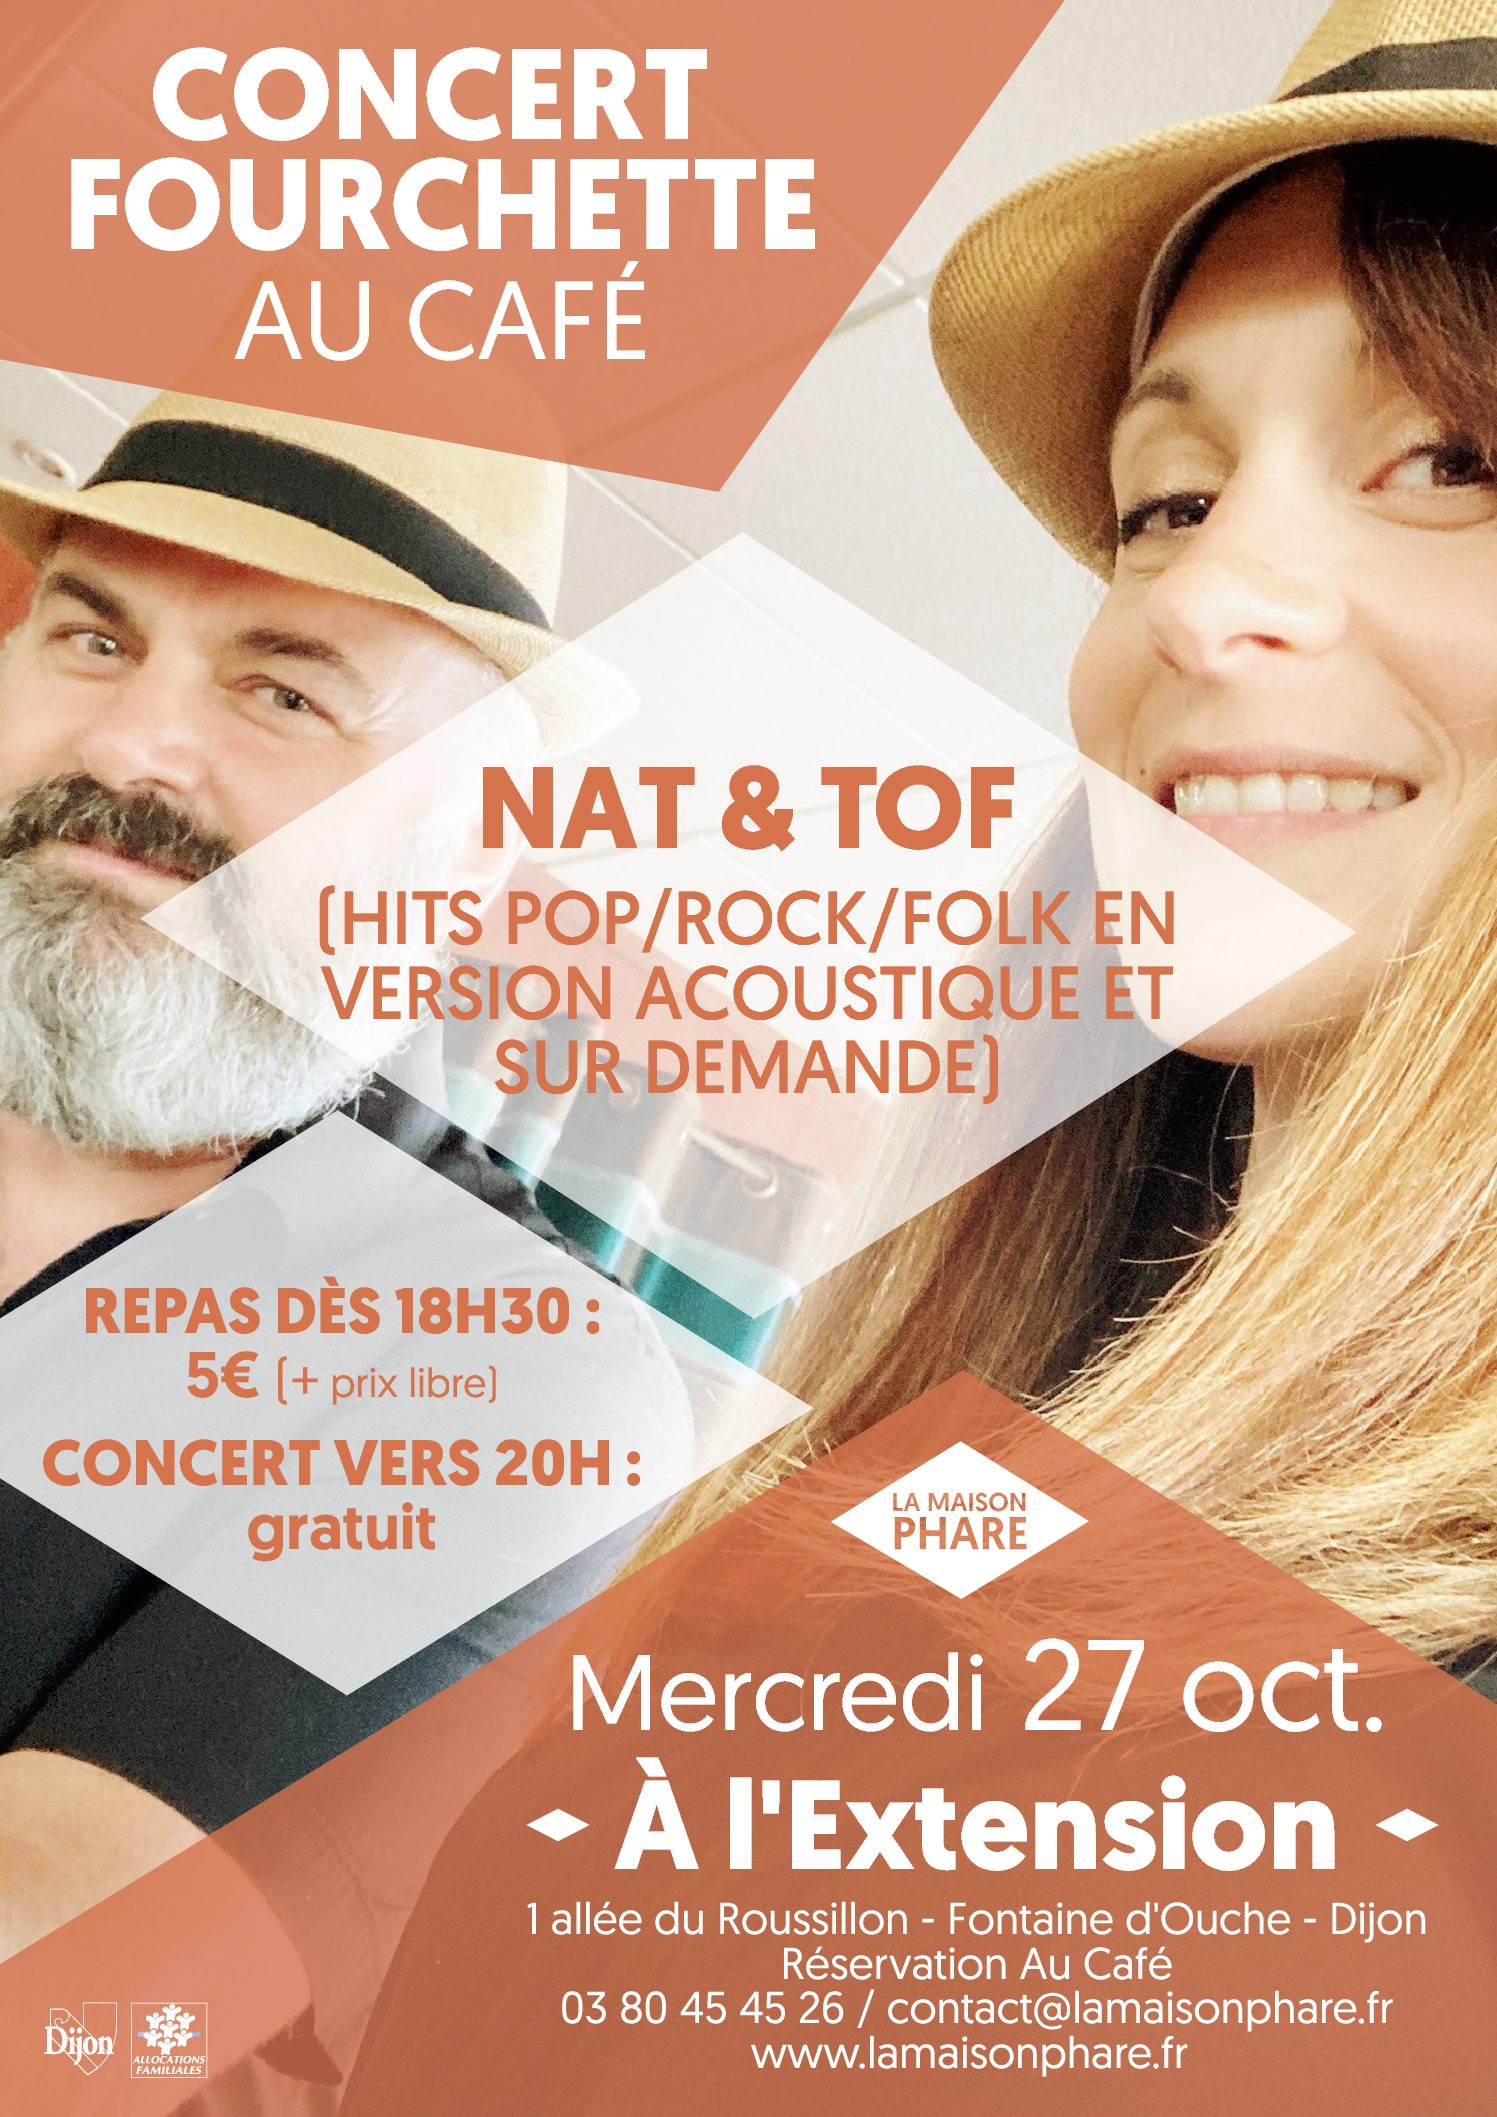 Concert-Fourchette : Nat & Tof